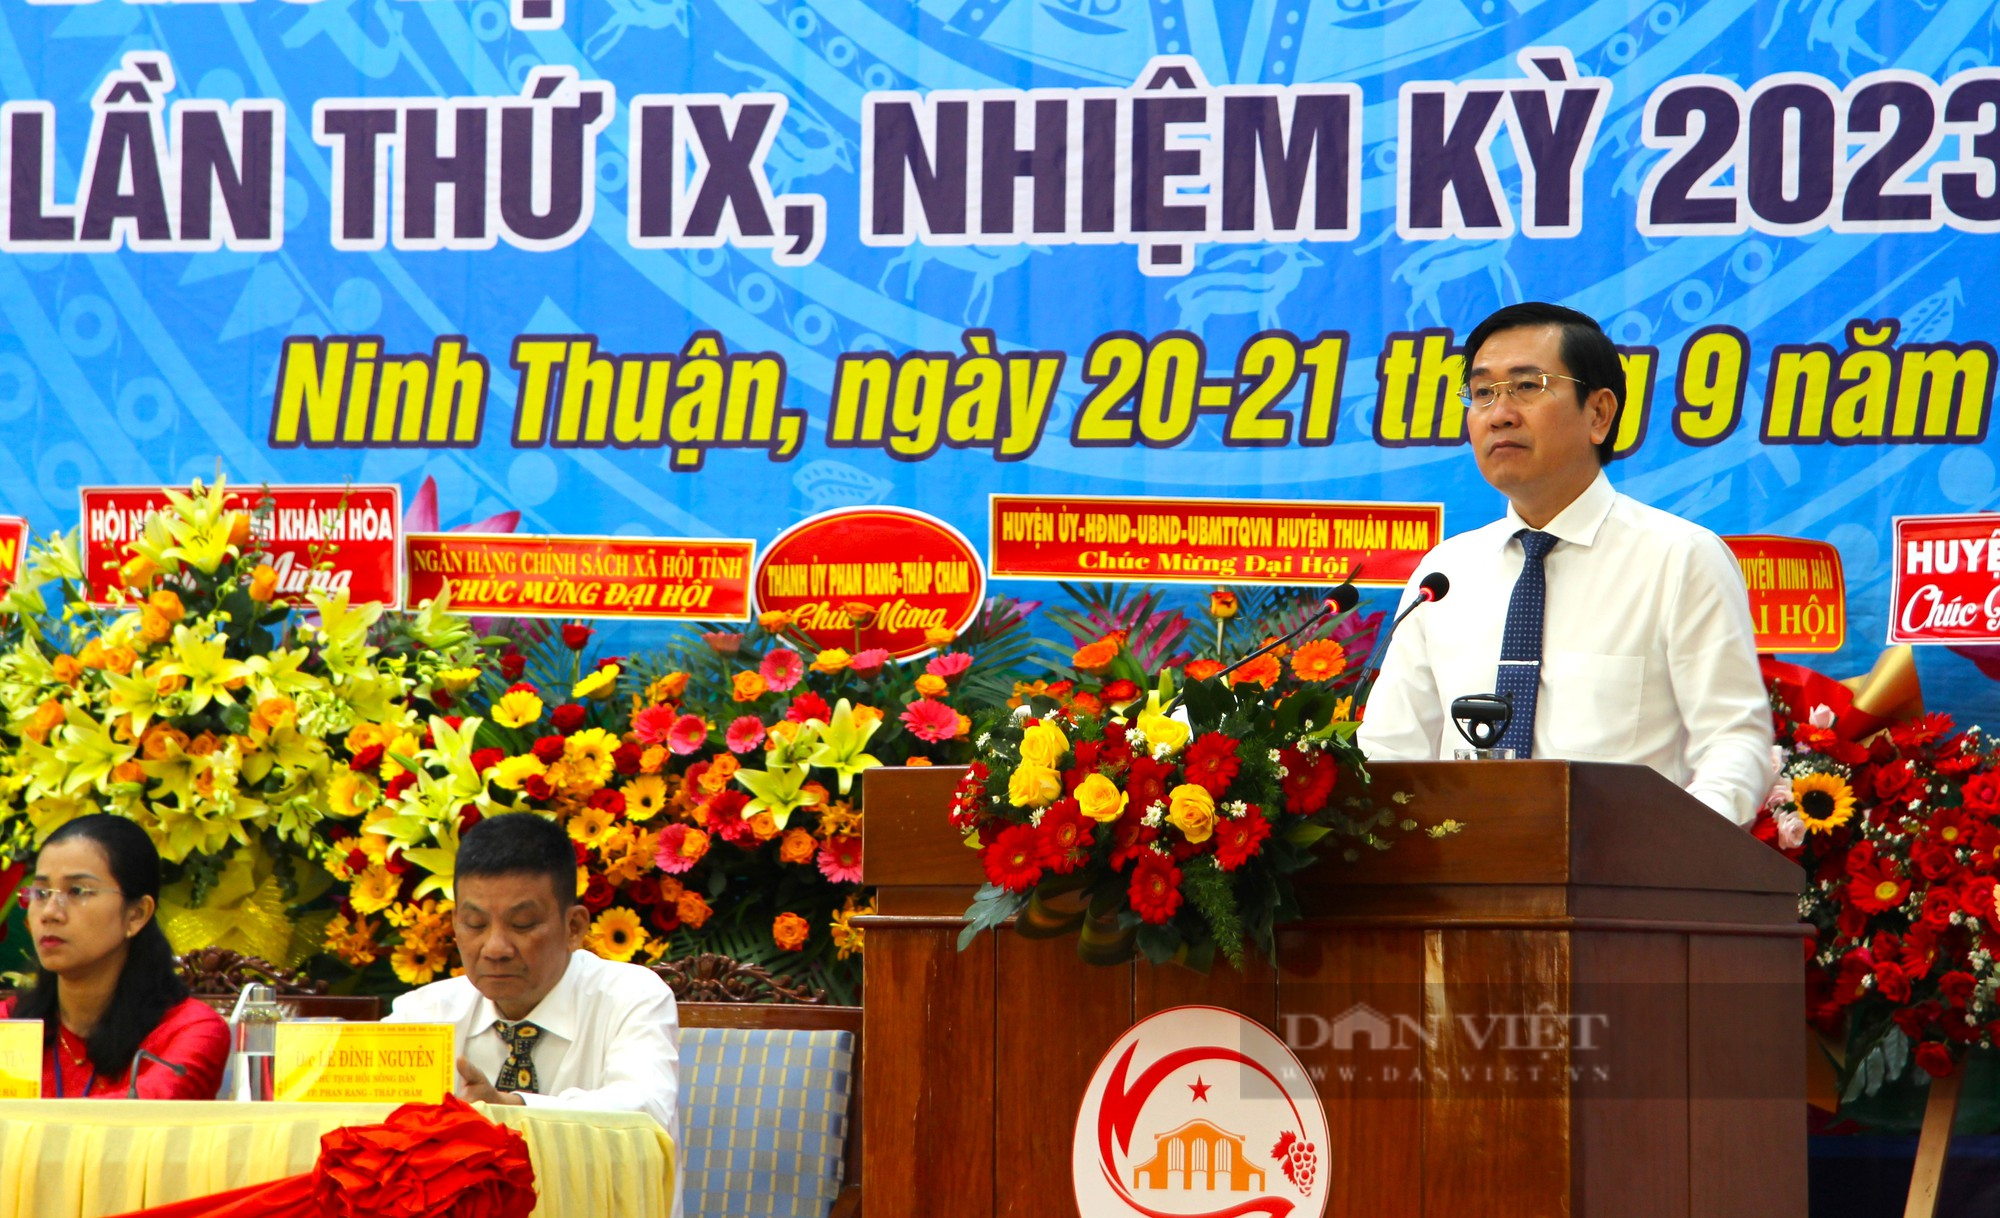 Phó chủ tịch Trung ương Hội Nguyễn Xuân Định nhấn mạnh 5 nhiệm vụ trọng tâm tại Đại hội Hội Nông dân tỉnh Ninh Thuận - Ảnh 8.